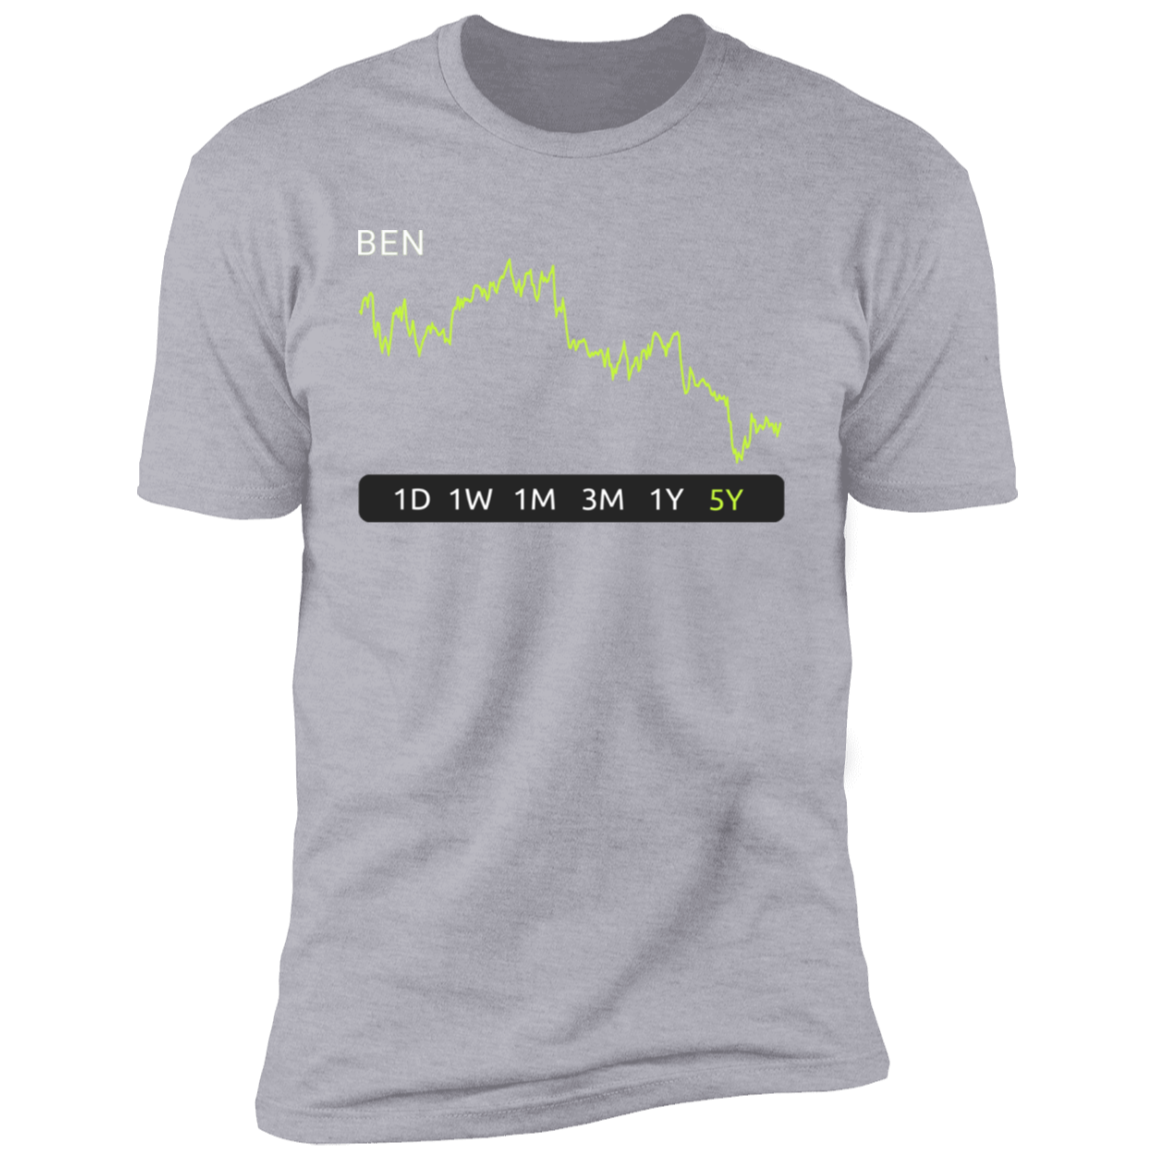 BEN Stock 5y Premium T-Shirt